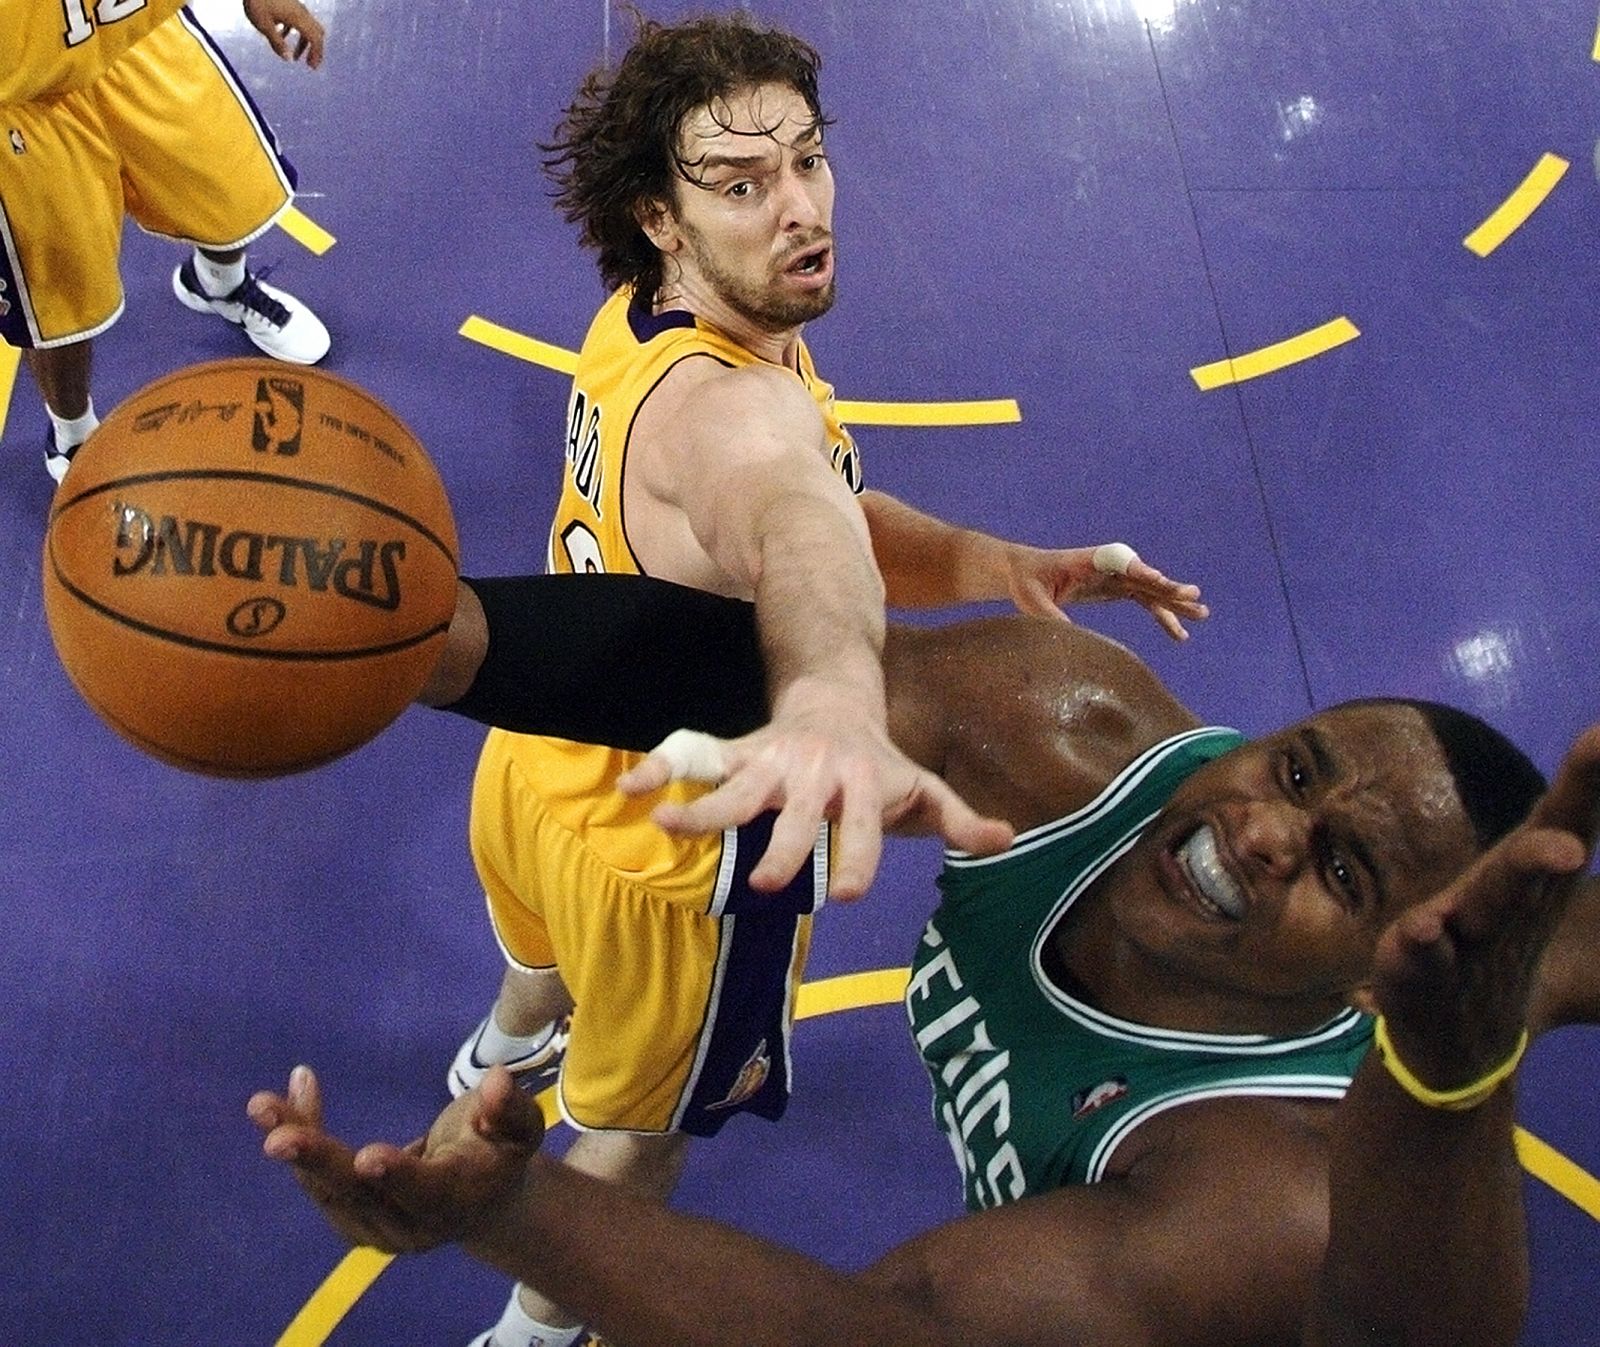 El pívot de los Lakers, Pau Gasol, en una imagen del partido que disputaron la temporada pasada ante los Celtics.